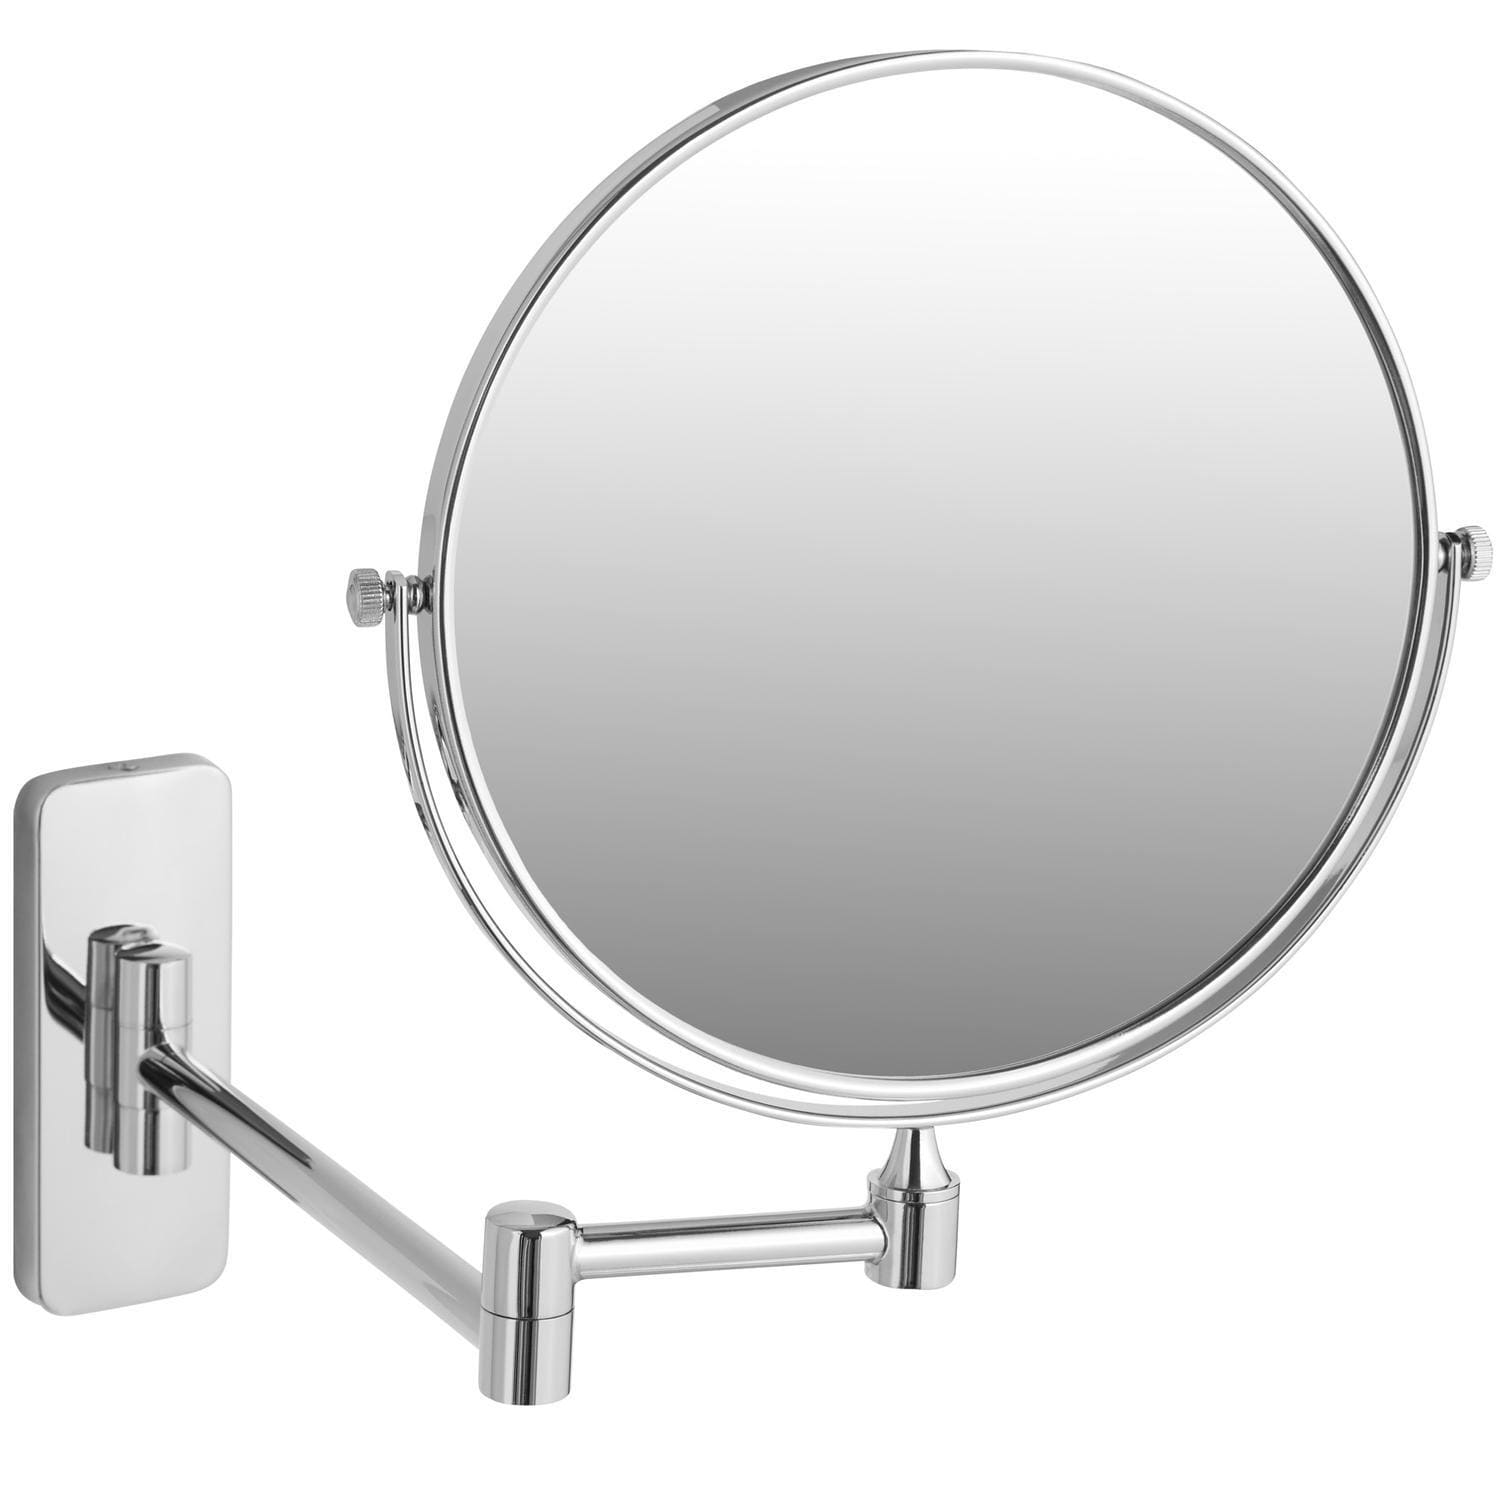 Makeup-spejl - 10-gange forstørrelse | Elgiganten